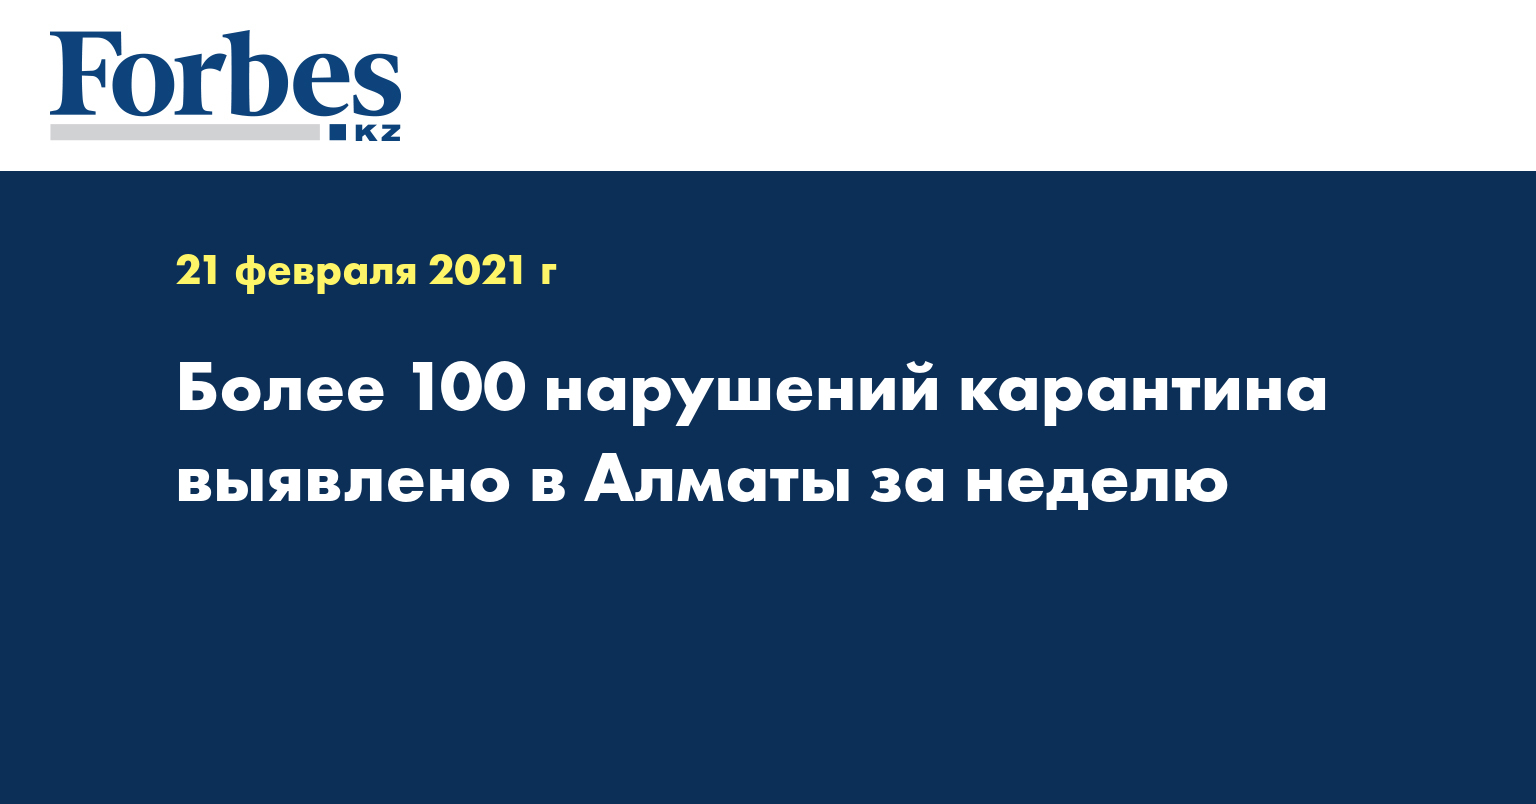 Более 100 нарушений карантина выявлено в Алматы за неделю